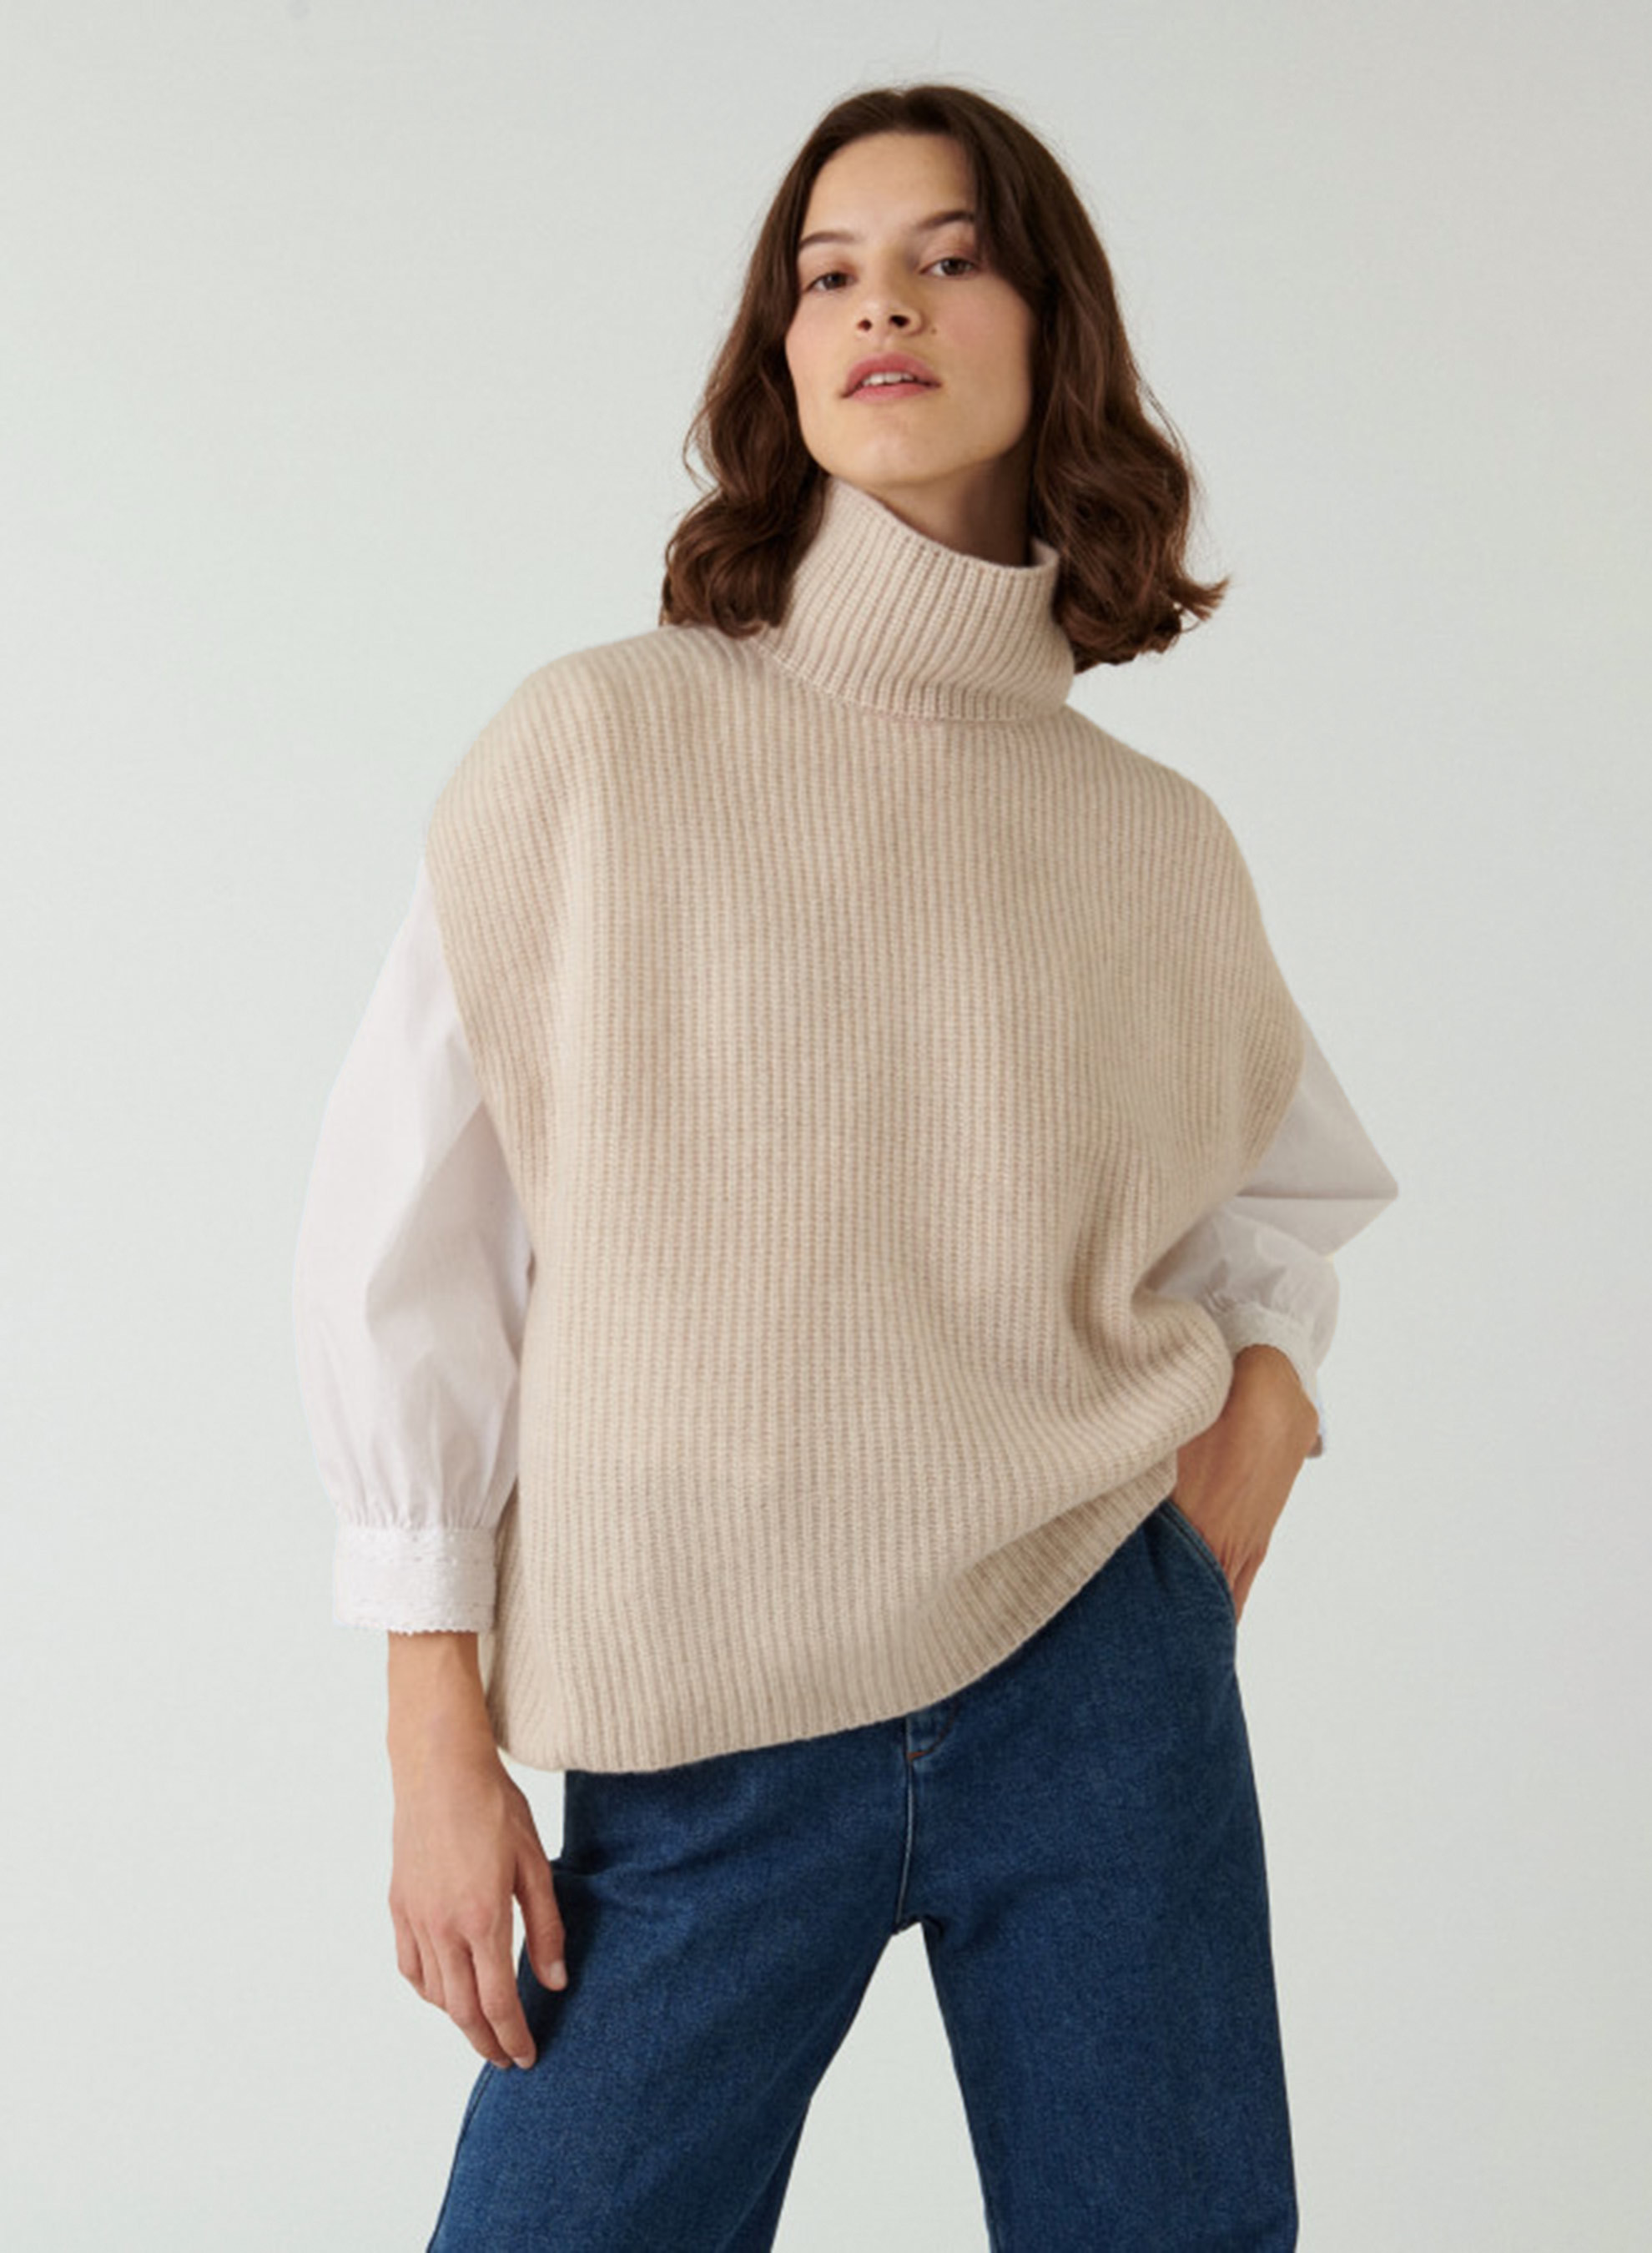 Recycled cashmere sleeveless turtleneck sweater   Dalya